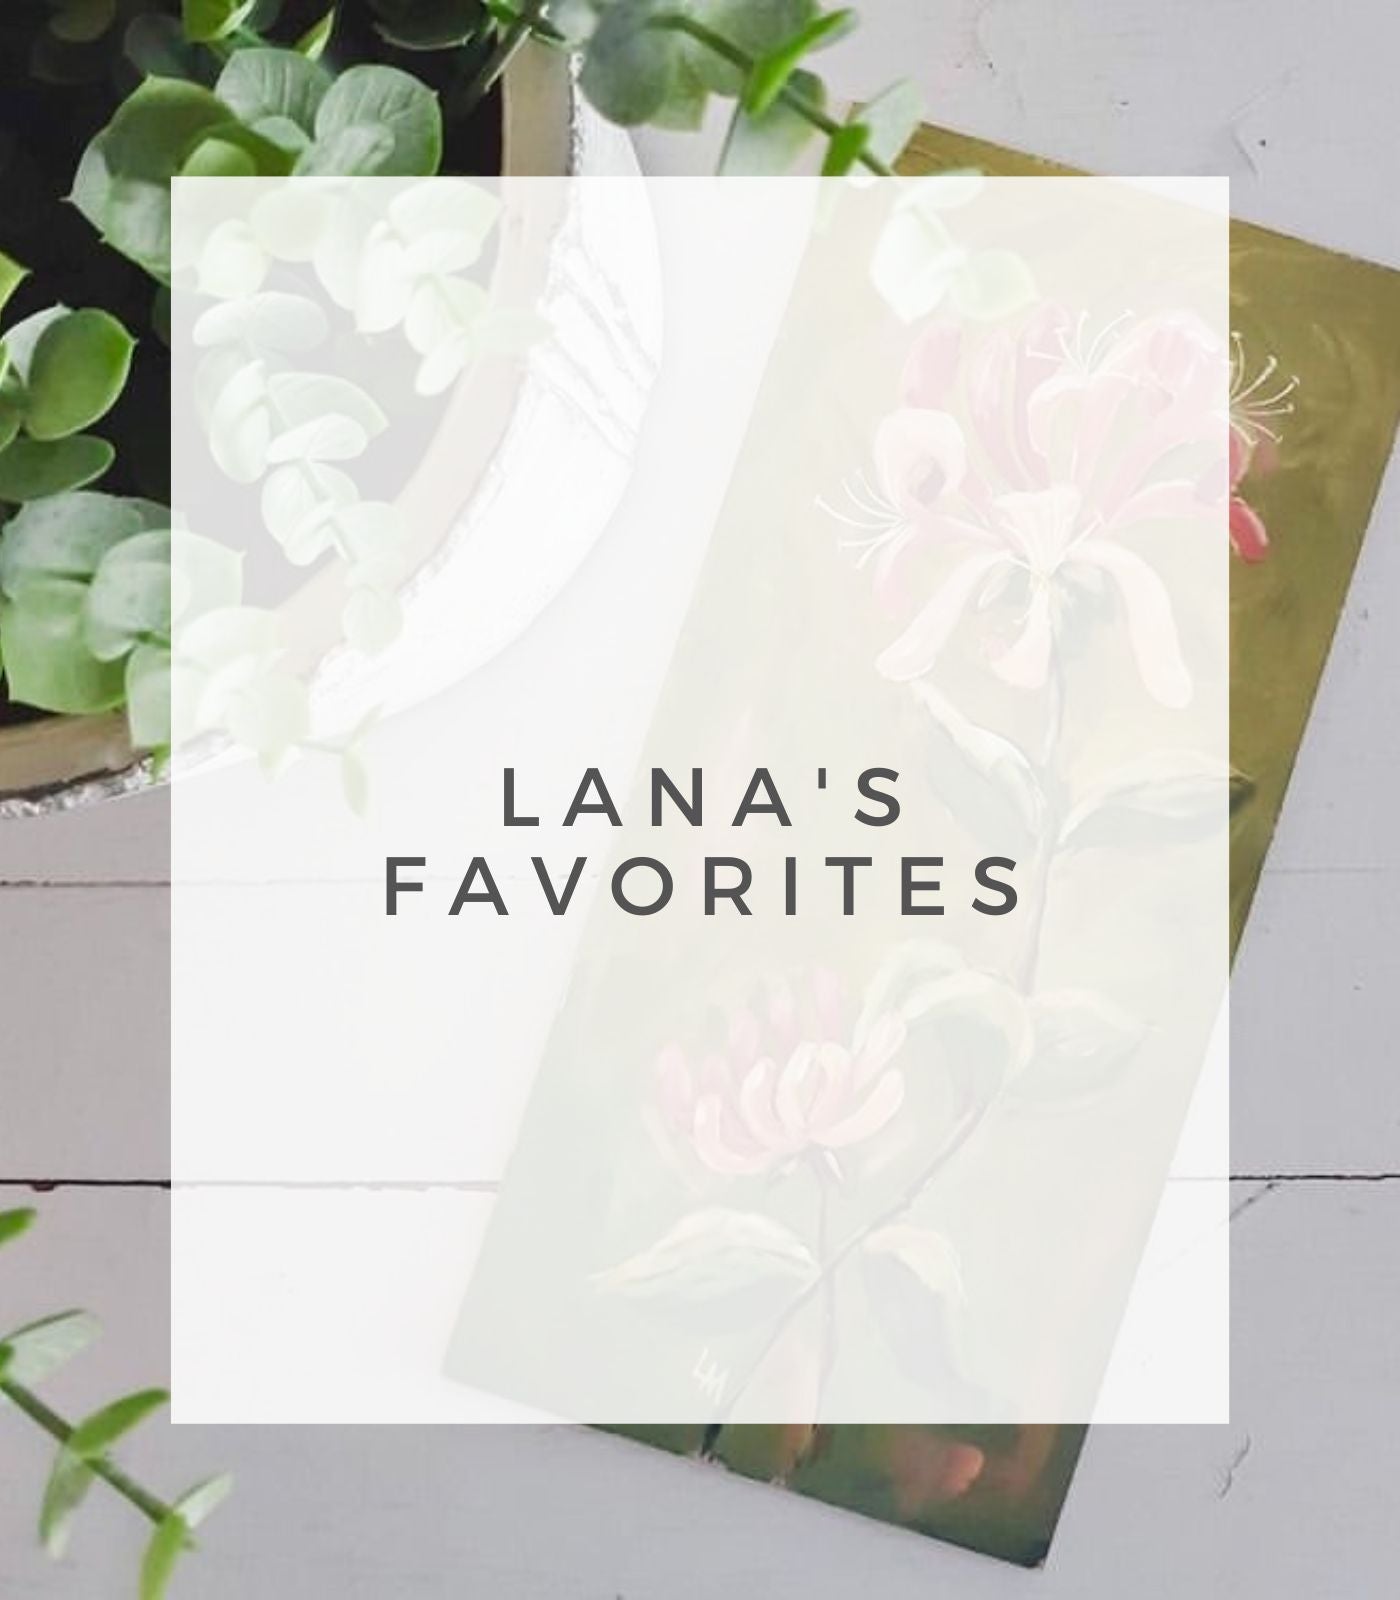 Lana's Favorites